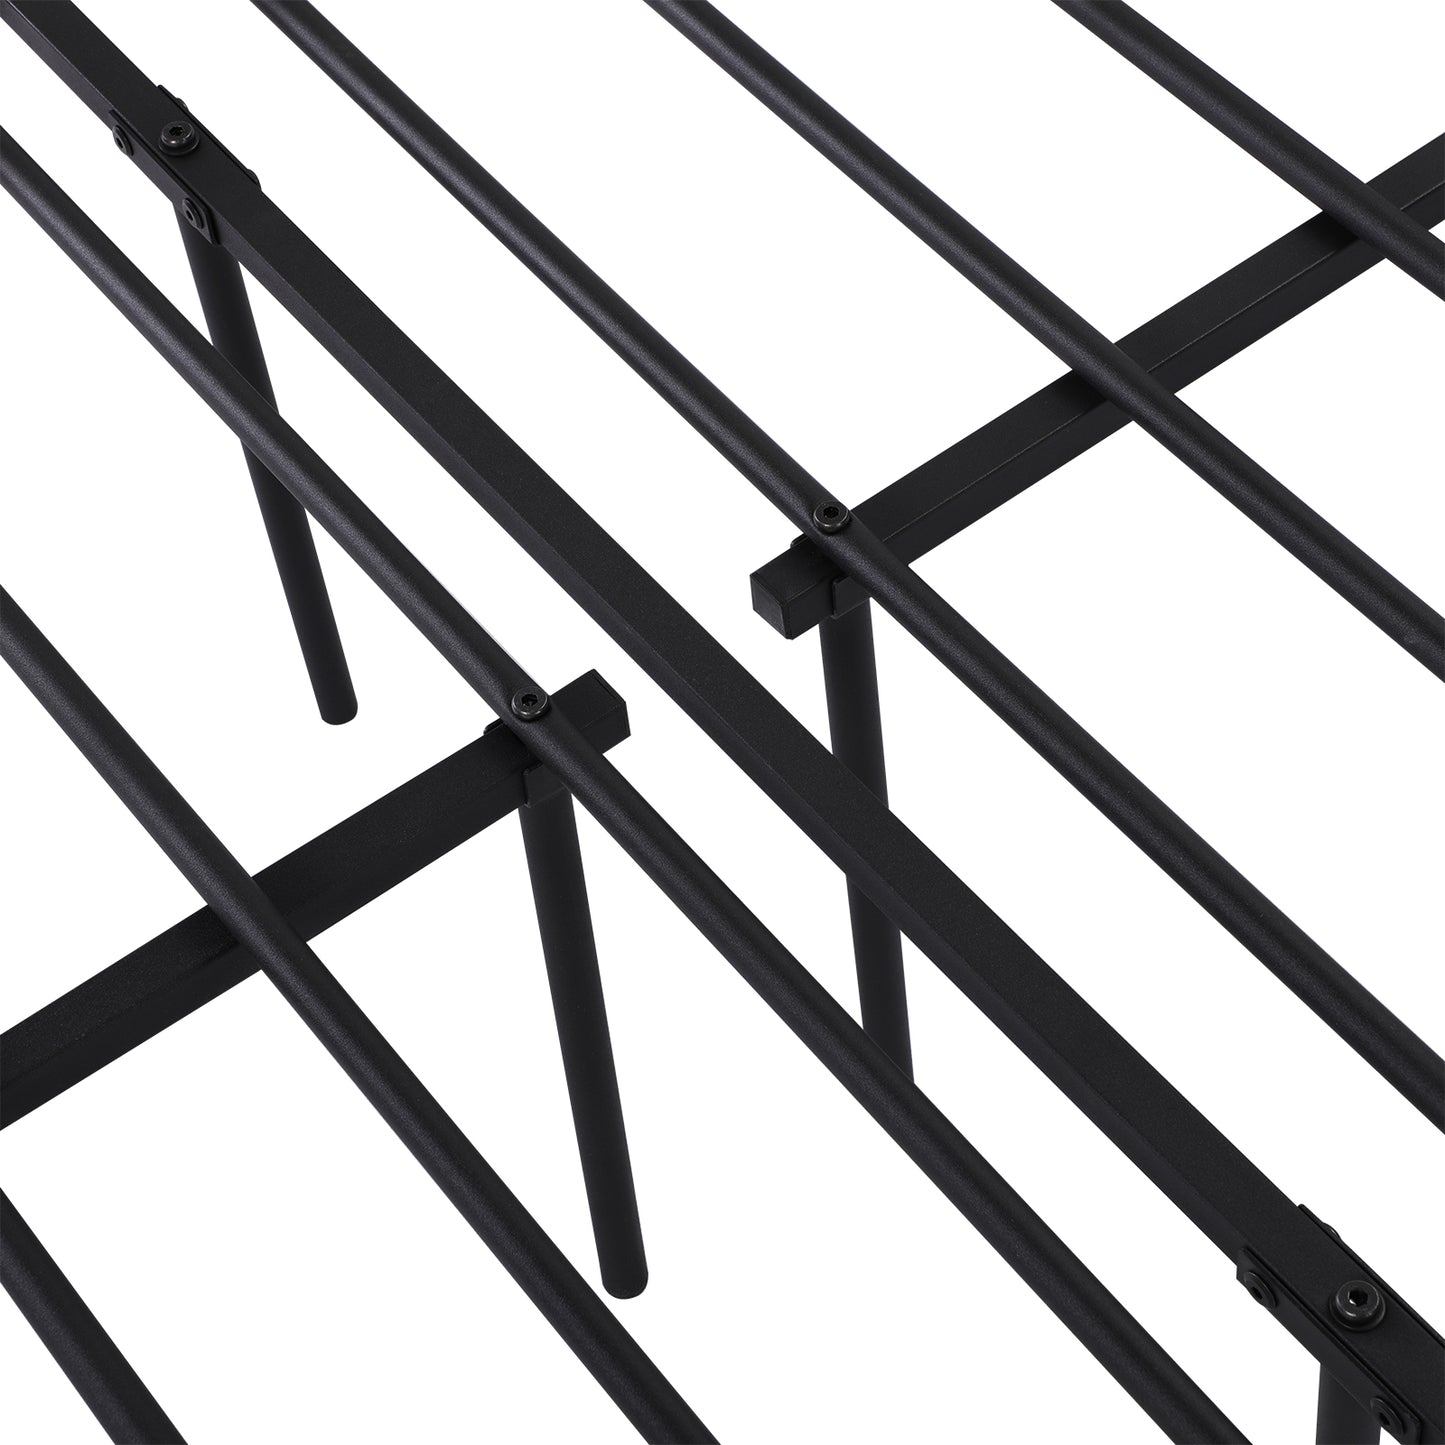 SOROSIS Single Metal Bed 95.5*206.4cm - Black